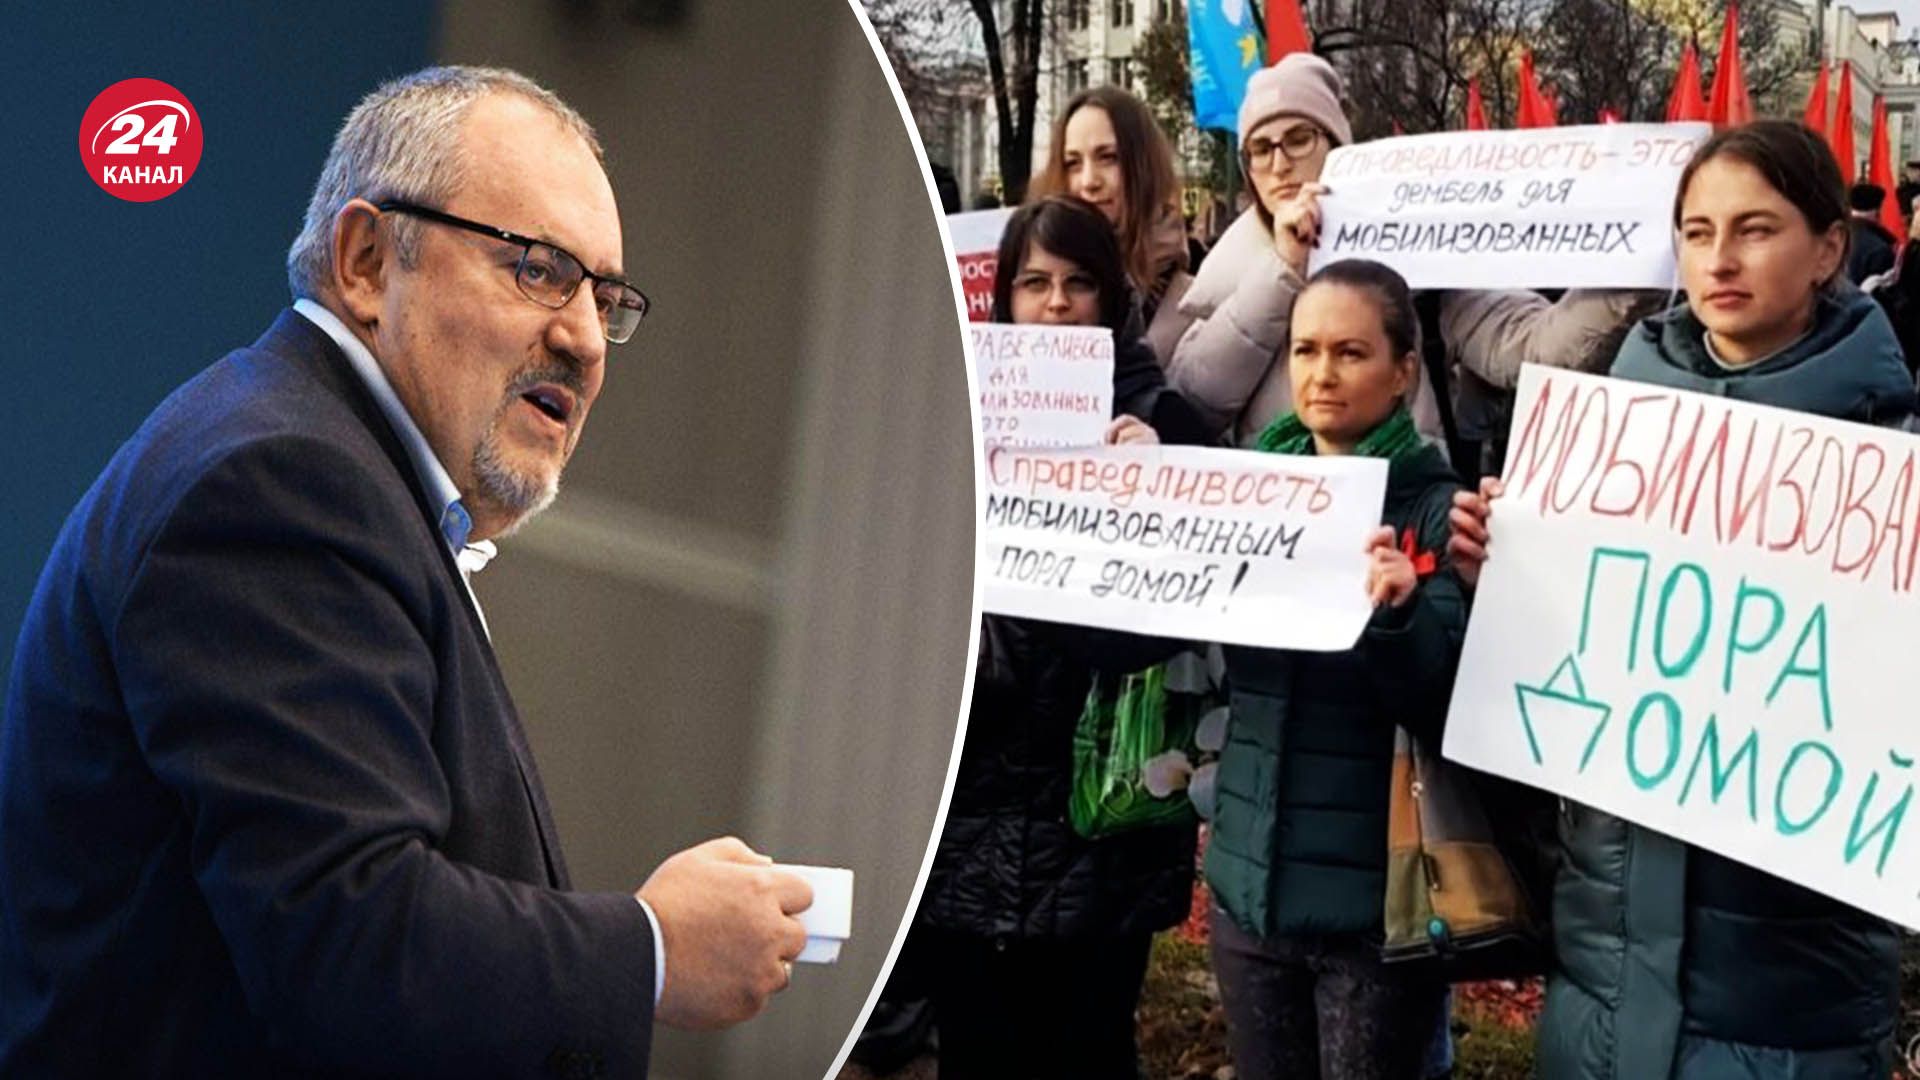 Борис Надеждин поддержал движение жен мобилизованных - какие шансы противника Путина - 24 Канал